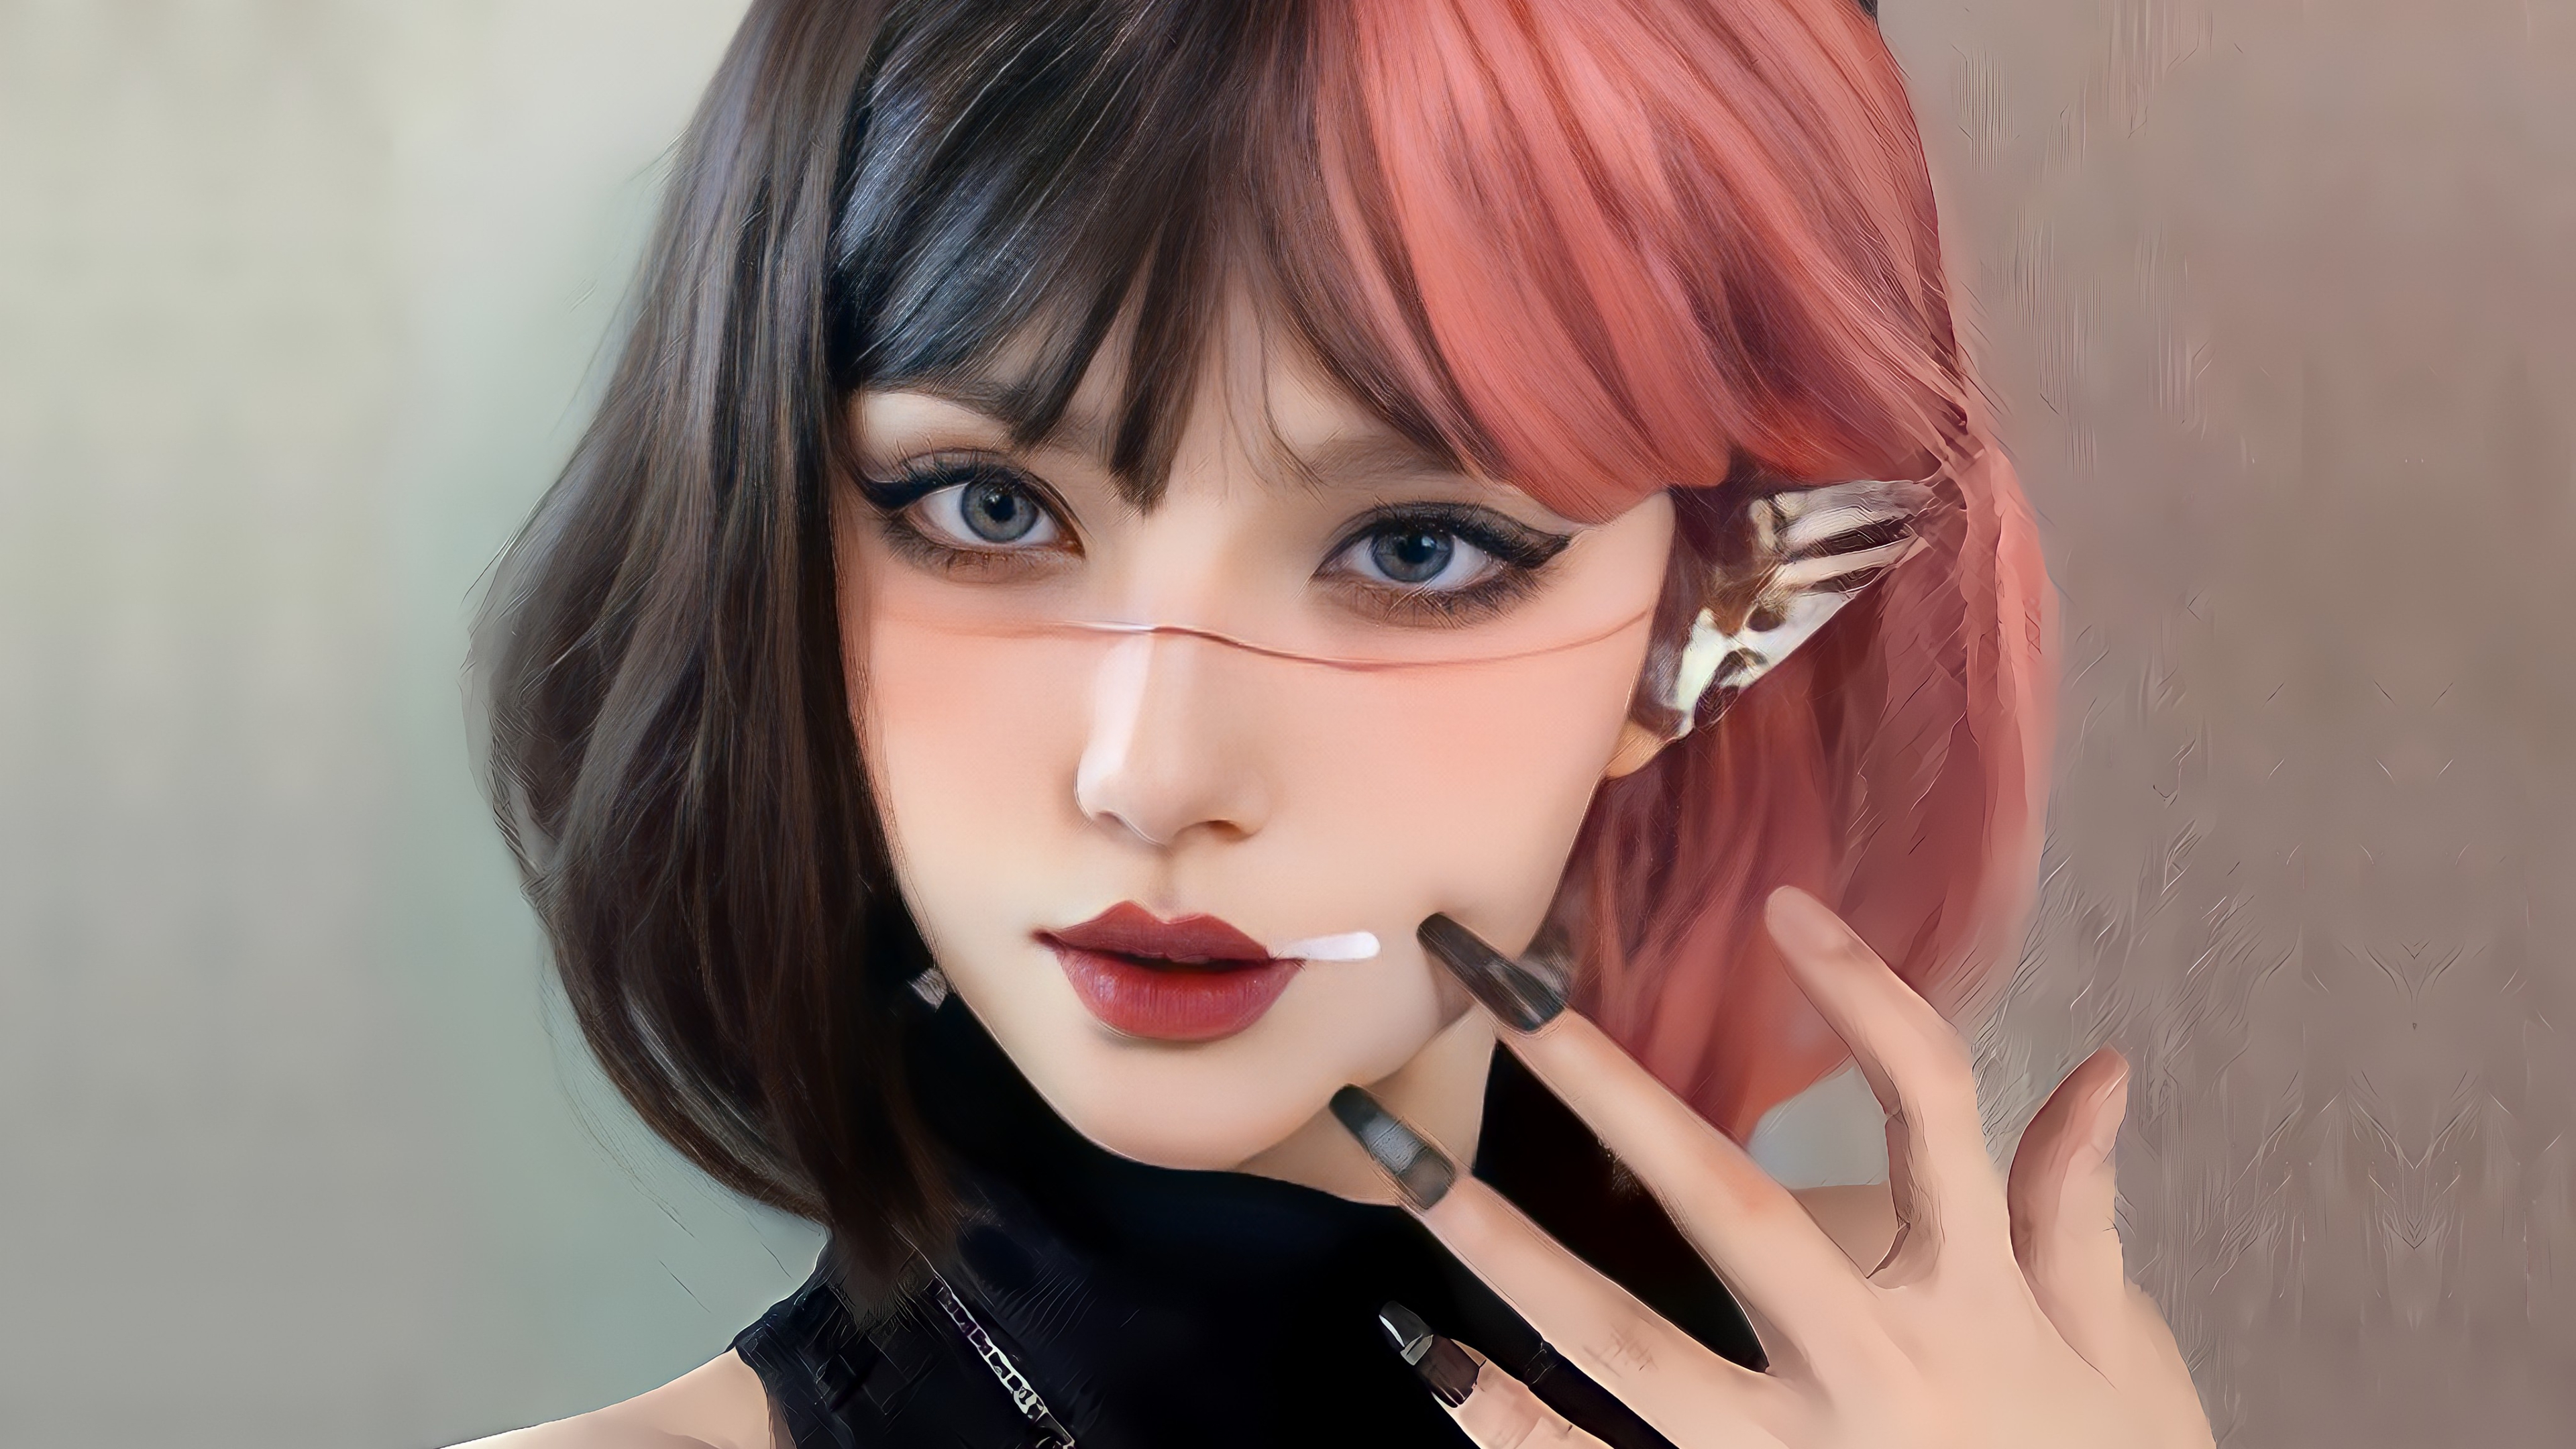 General 3840x2160 CGI fantasy girl Asian women digital art digital painting